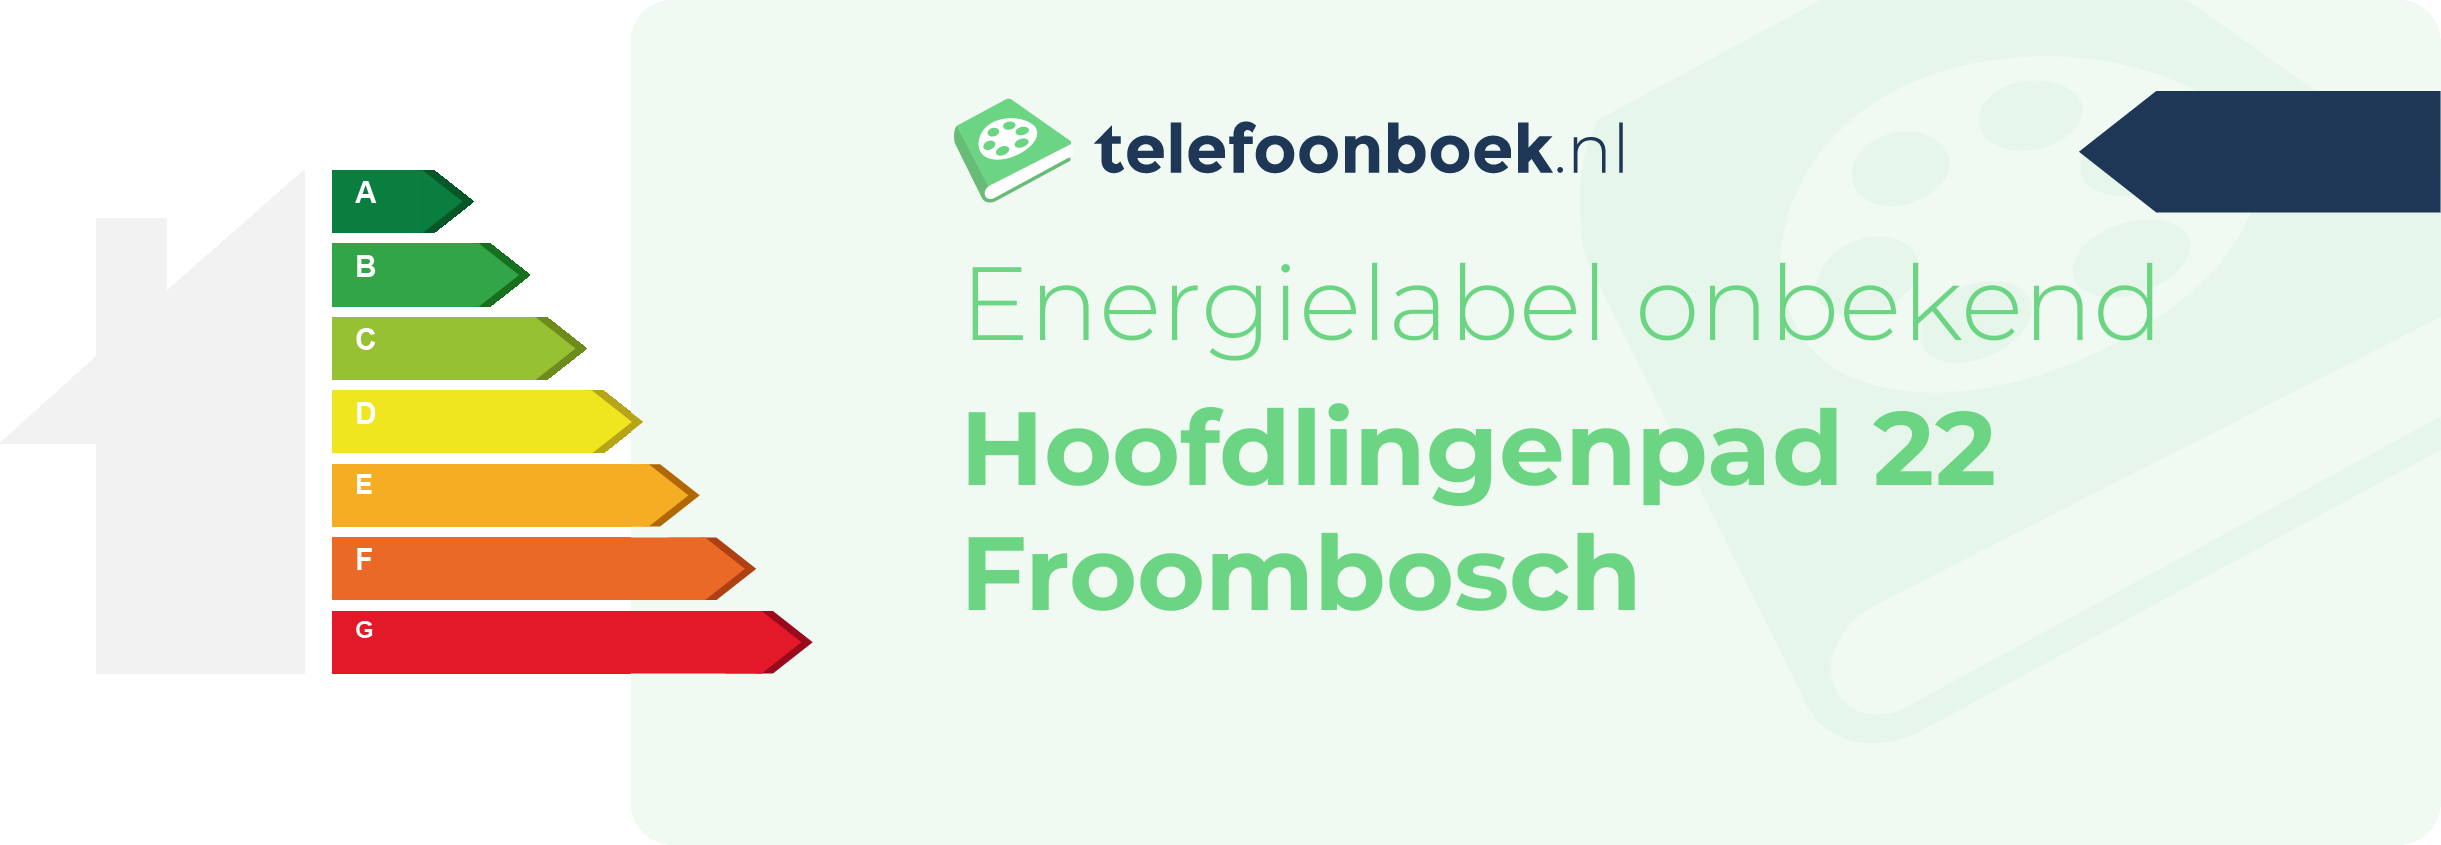 Energielabel Hoofdlingenpad 22 Froombosch